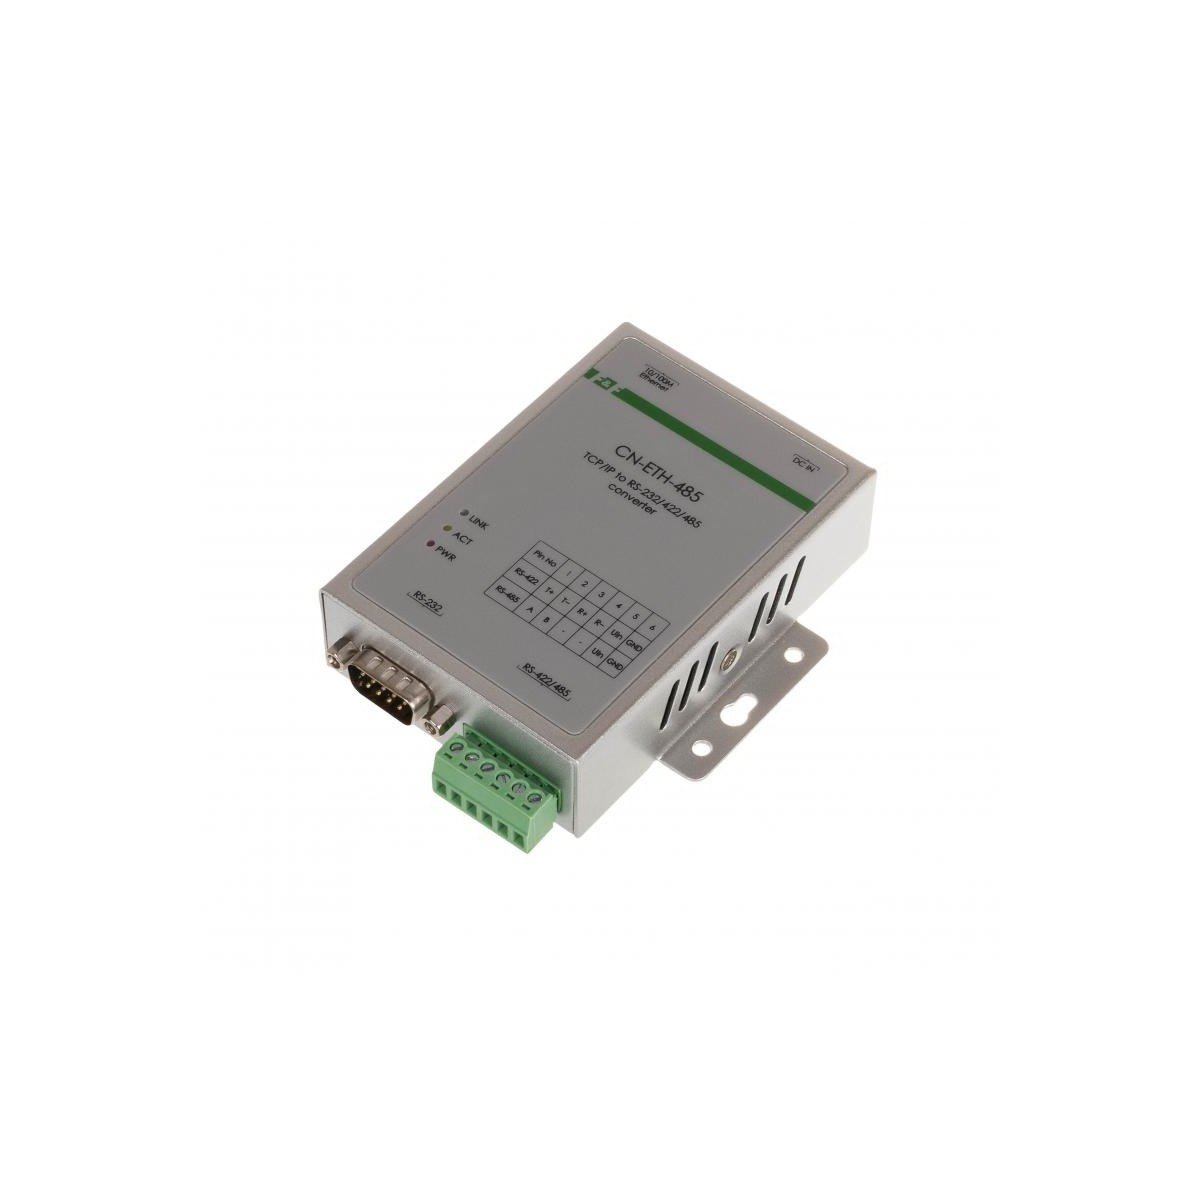 MAX-CN-ETH-485 konwerter RS-485 LAN (TCP/IP) - zamiennik dla wycofanego ATC-1000 F&F